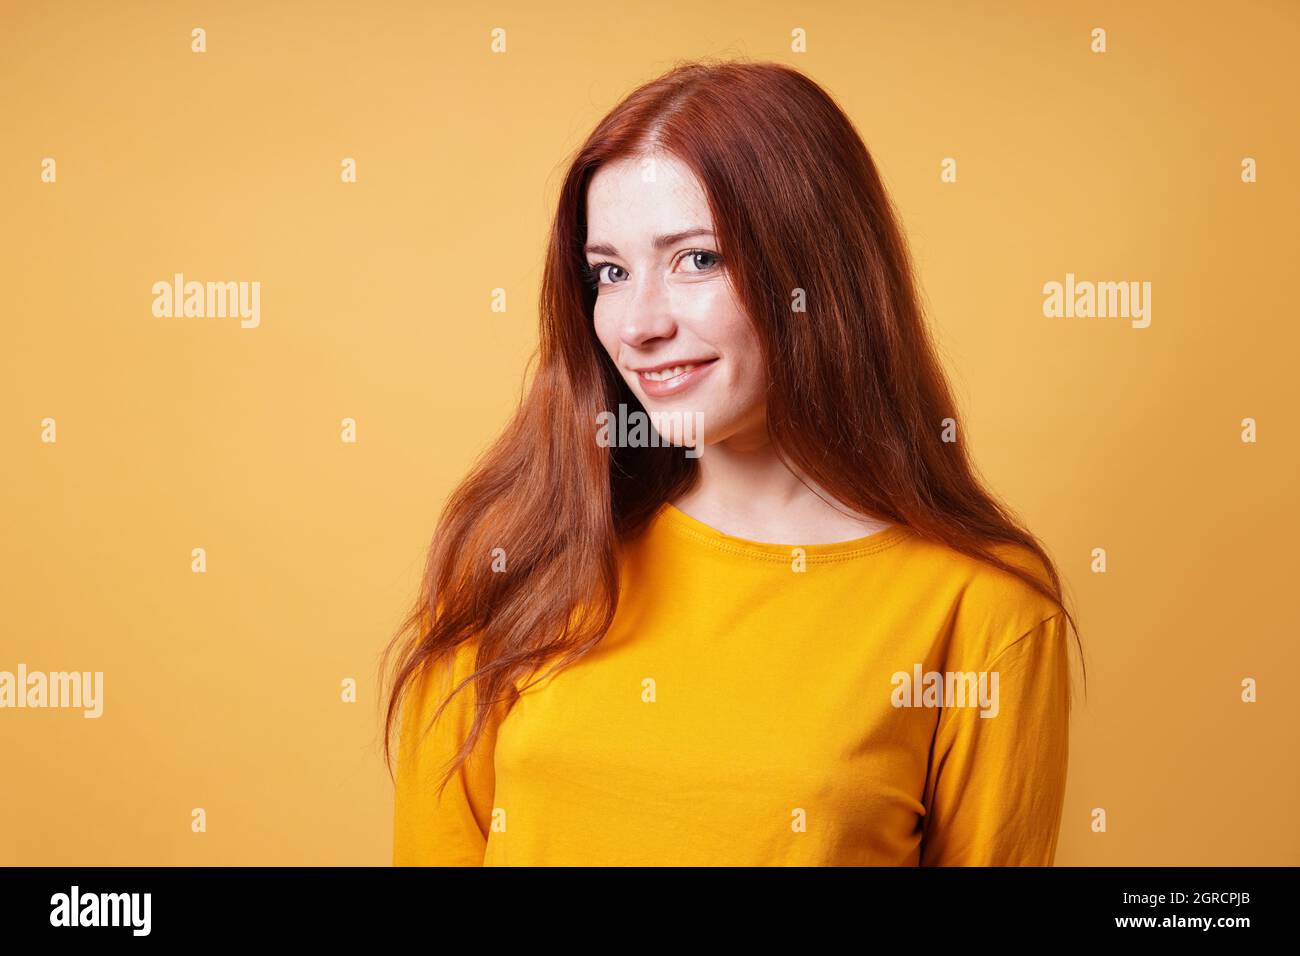 Glückliche junge Frau mit langen roten Haaren lächelnd Stockfoto